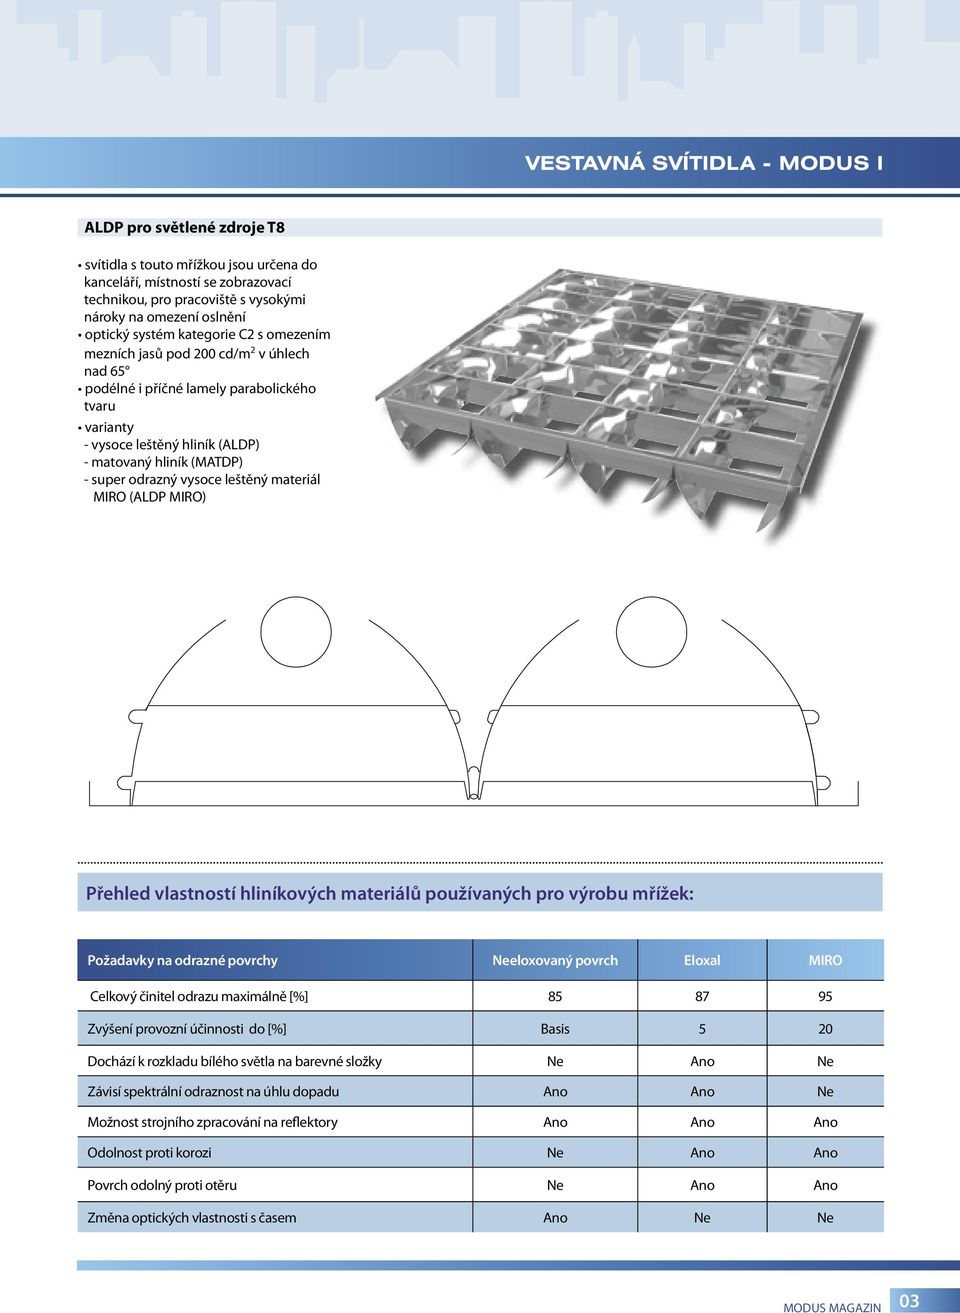 super odrazný vysoce leštěný materiál MIRO (ALDP MIRO) Přehled vlastností hliníkových materiálů používaných pro výrobu mřížek: Požadavky na odrazné povrchy Neeloxovaný povrch Eloxal MIRO Celkový